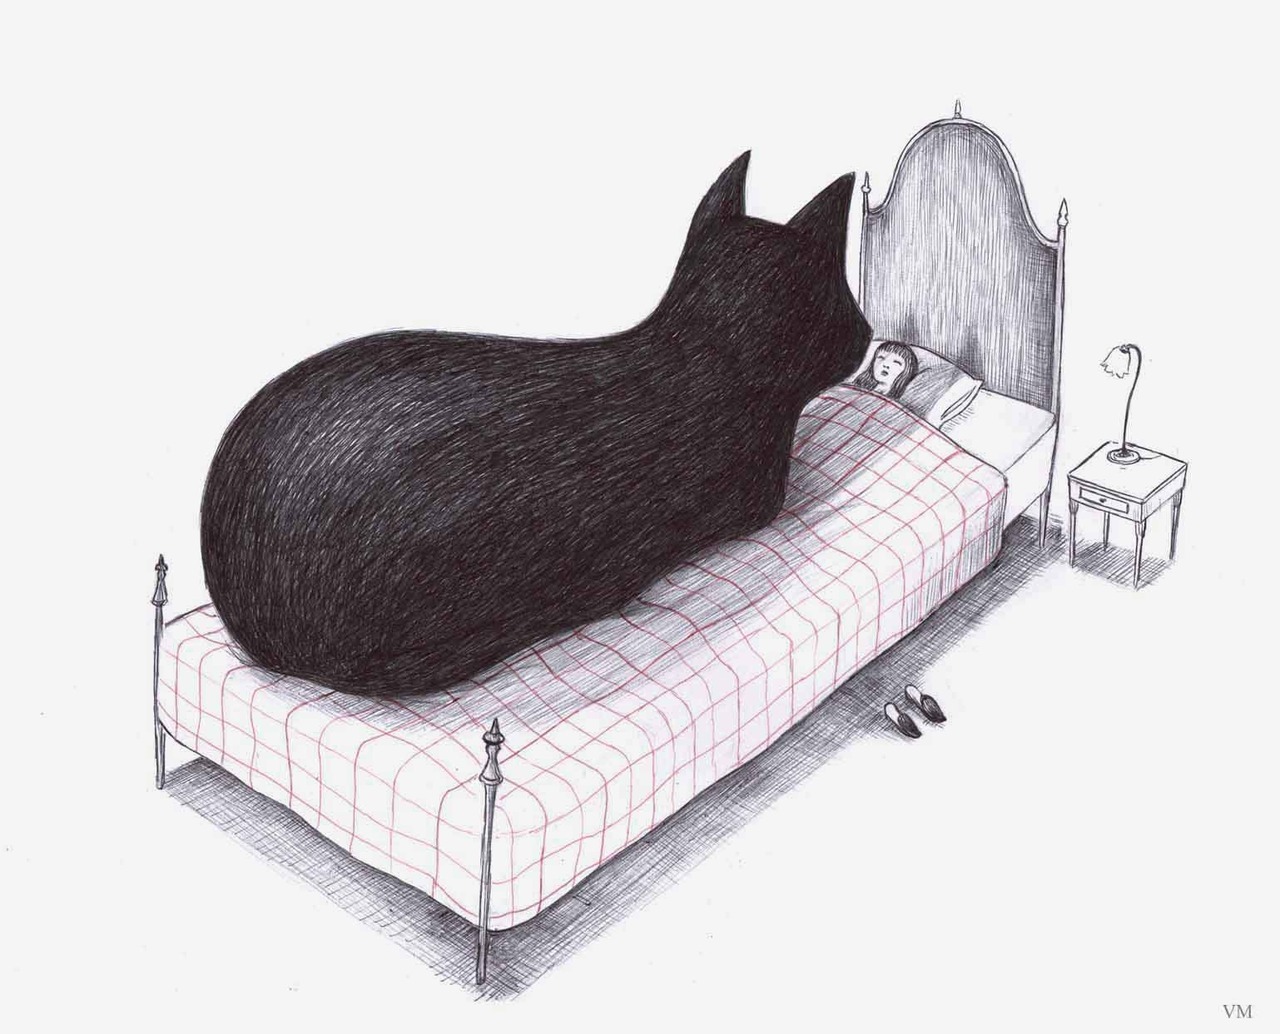 1280x1034, 207 Kb / кровать, кошка, Virginia Mori